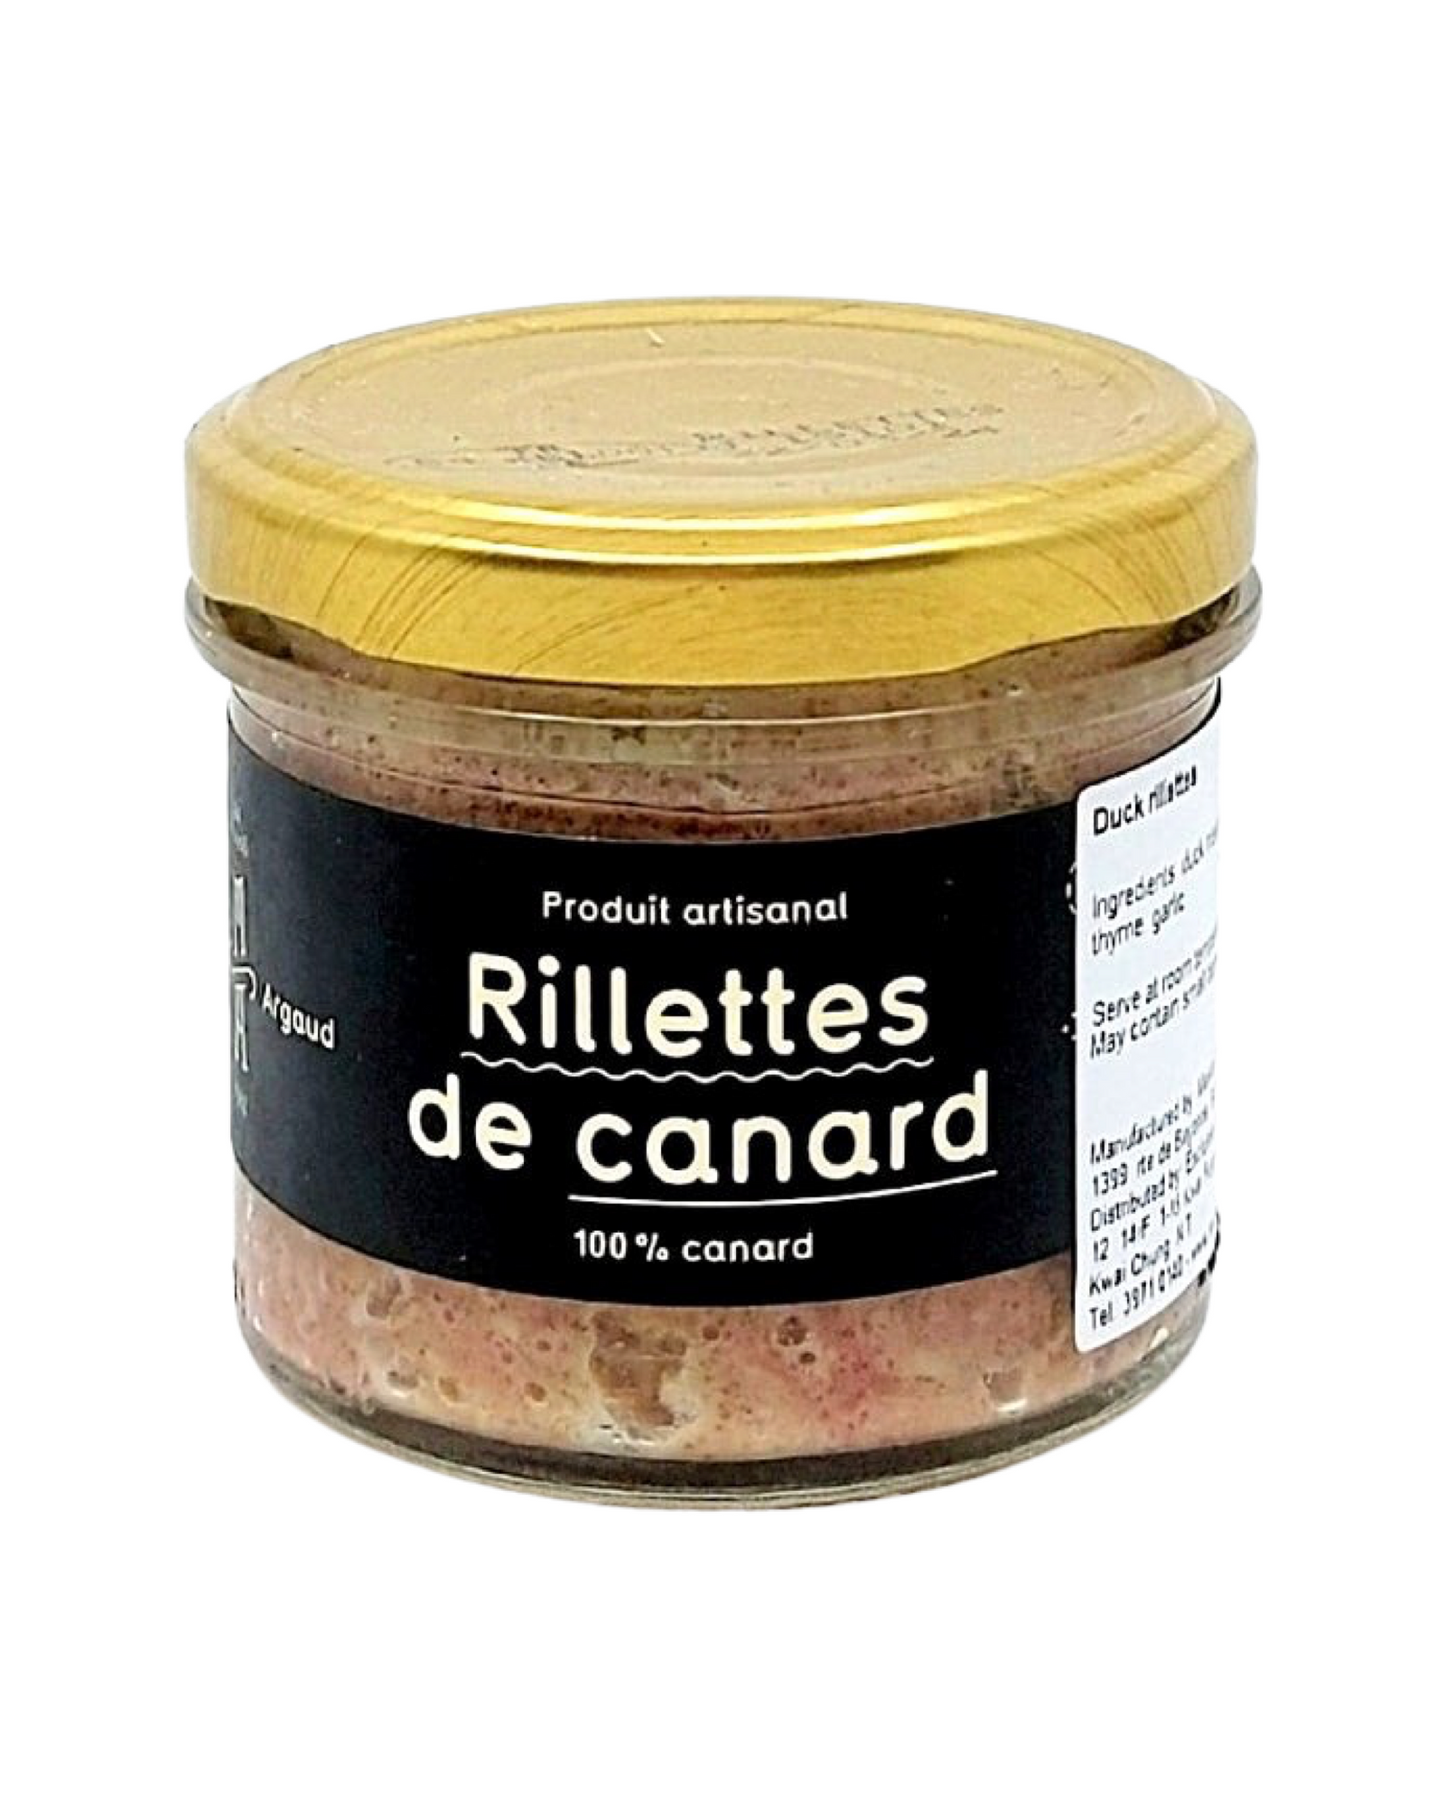 Duck rillettes 傳統法國鴨肉醬   (長時間烹調)    (180g)